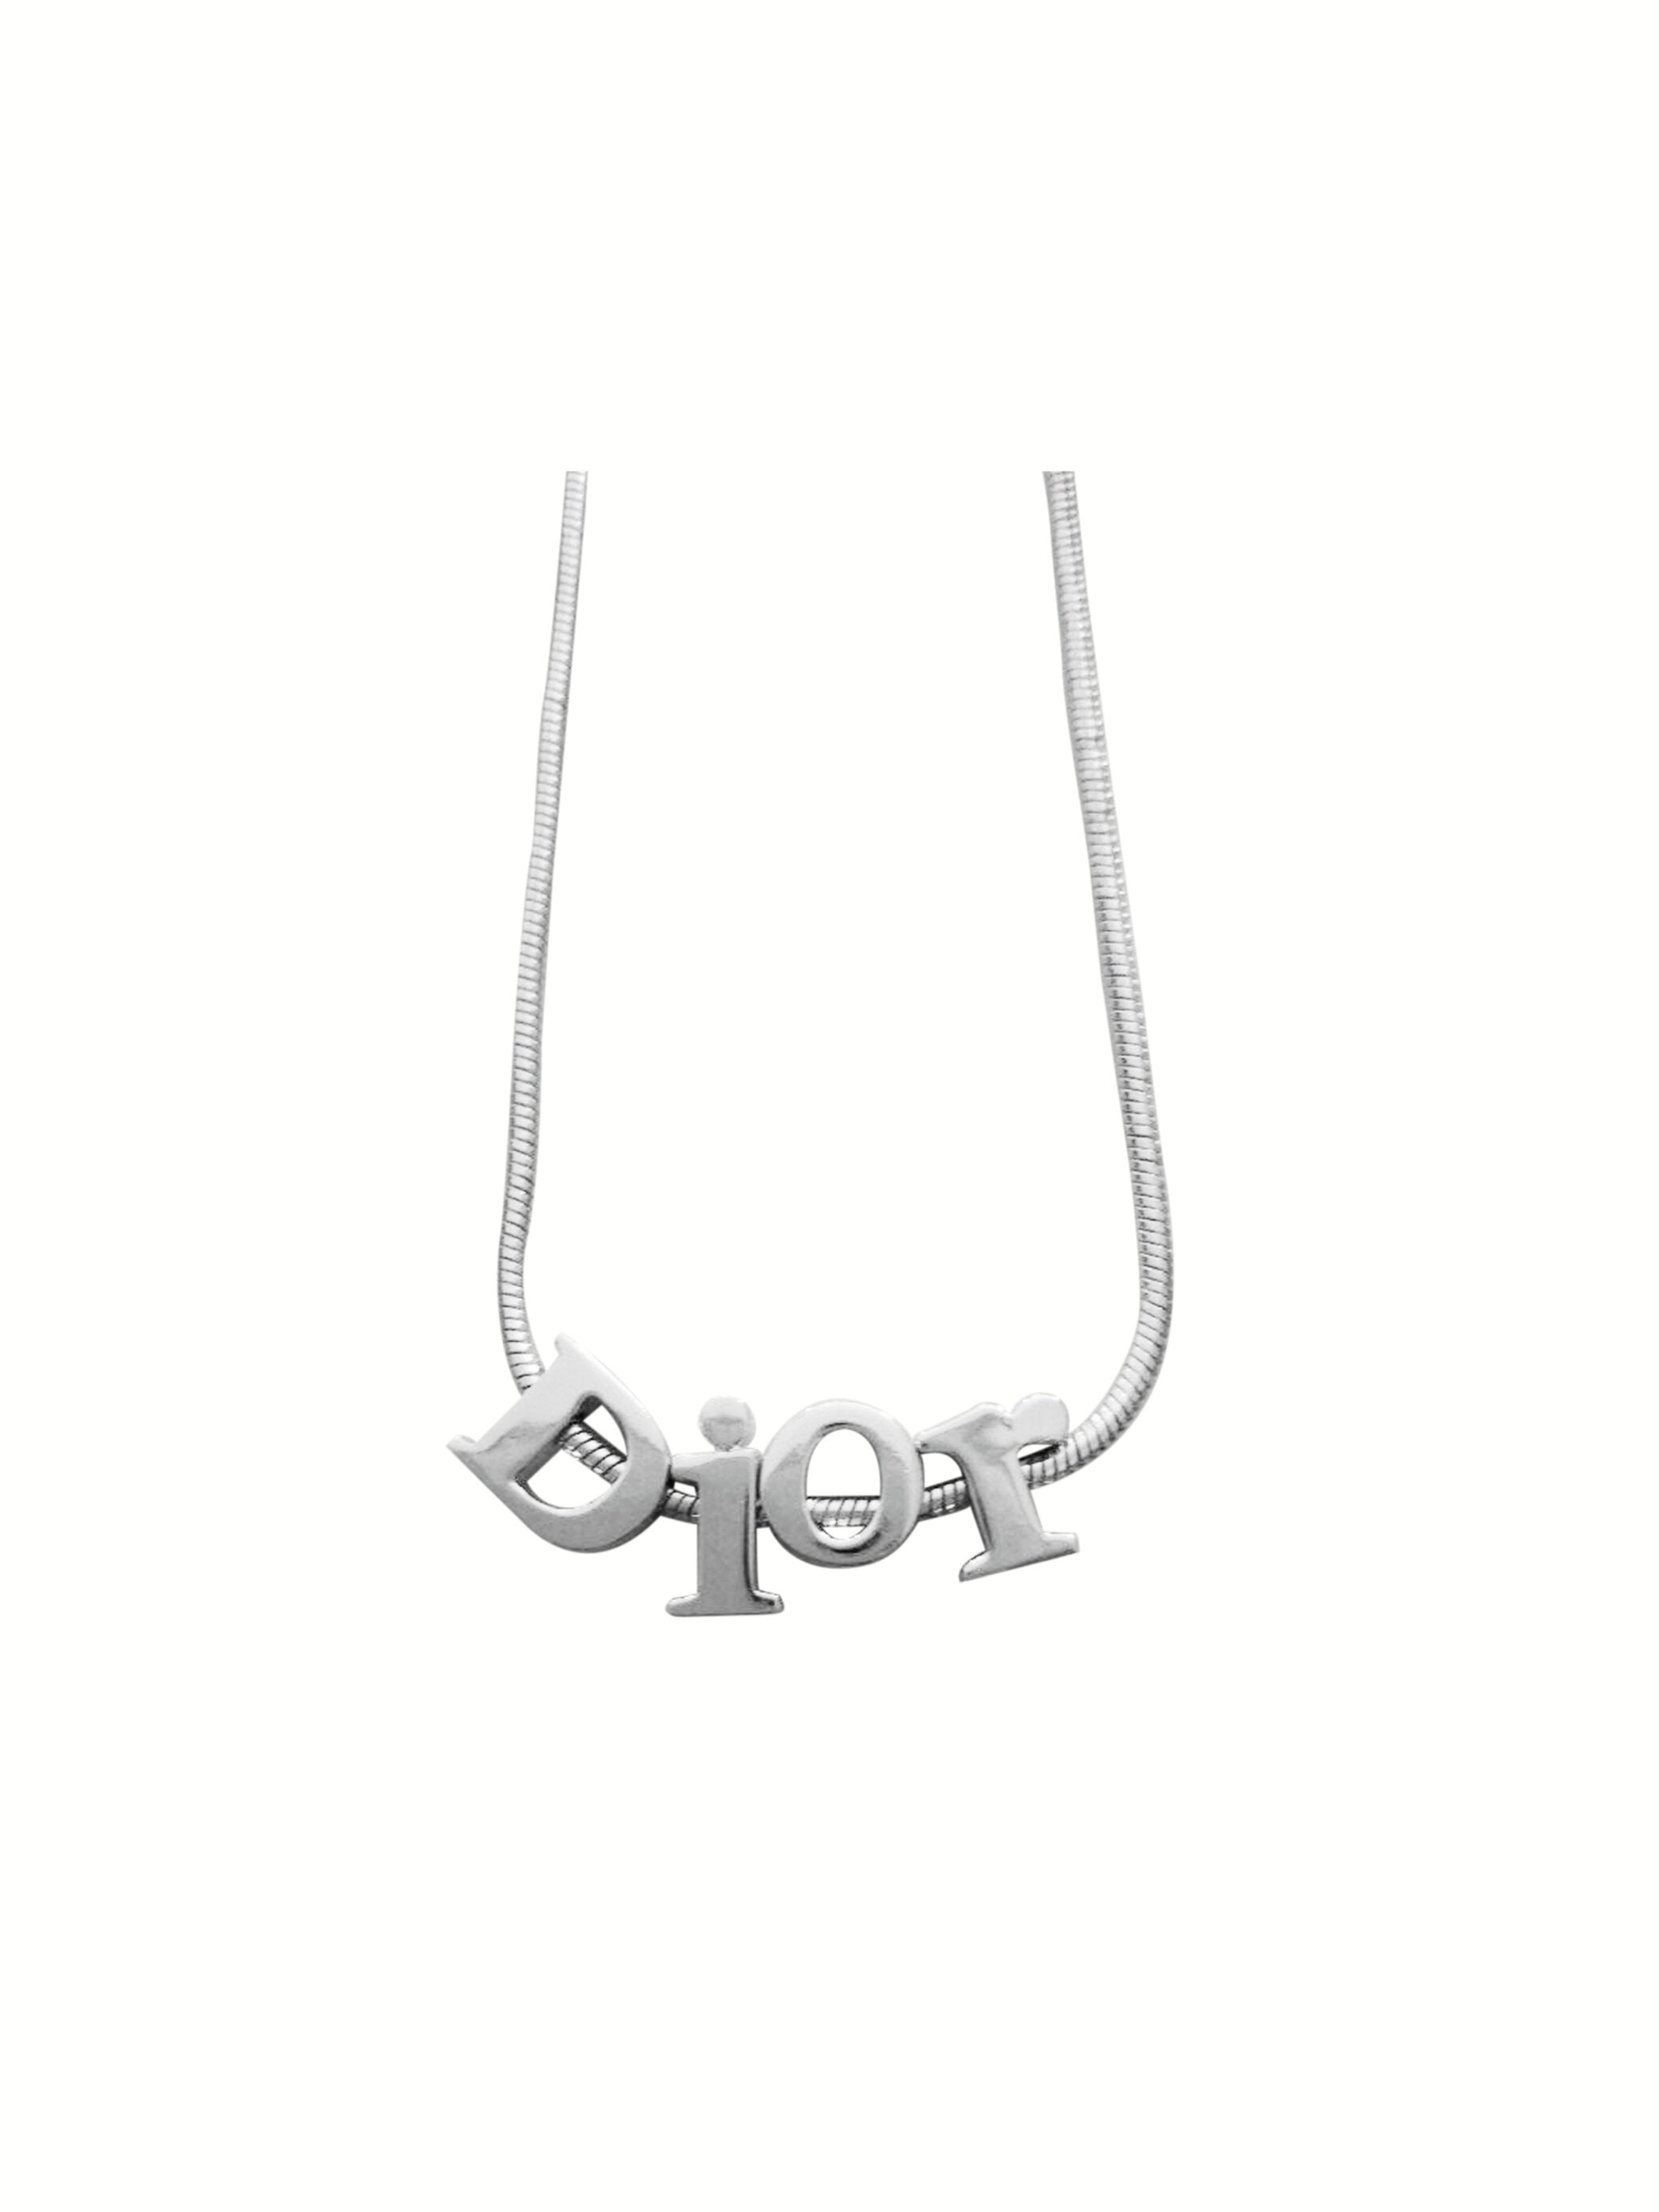 Christian Dior Pendant Necklace Gold Tone Chain W Rhinestone Accessories  Good  eBay